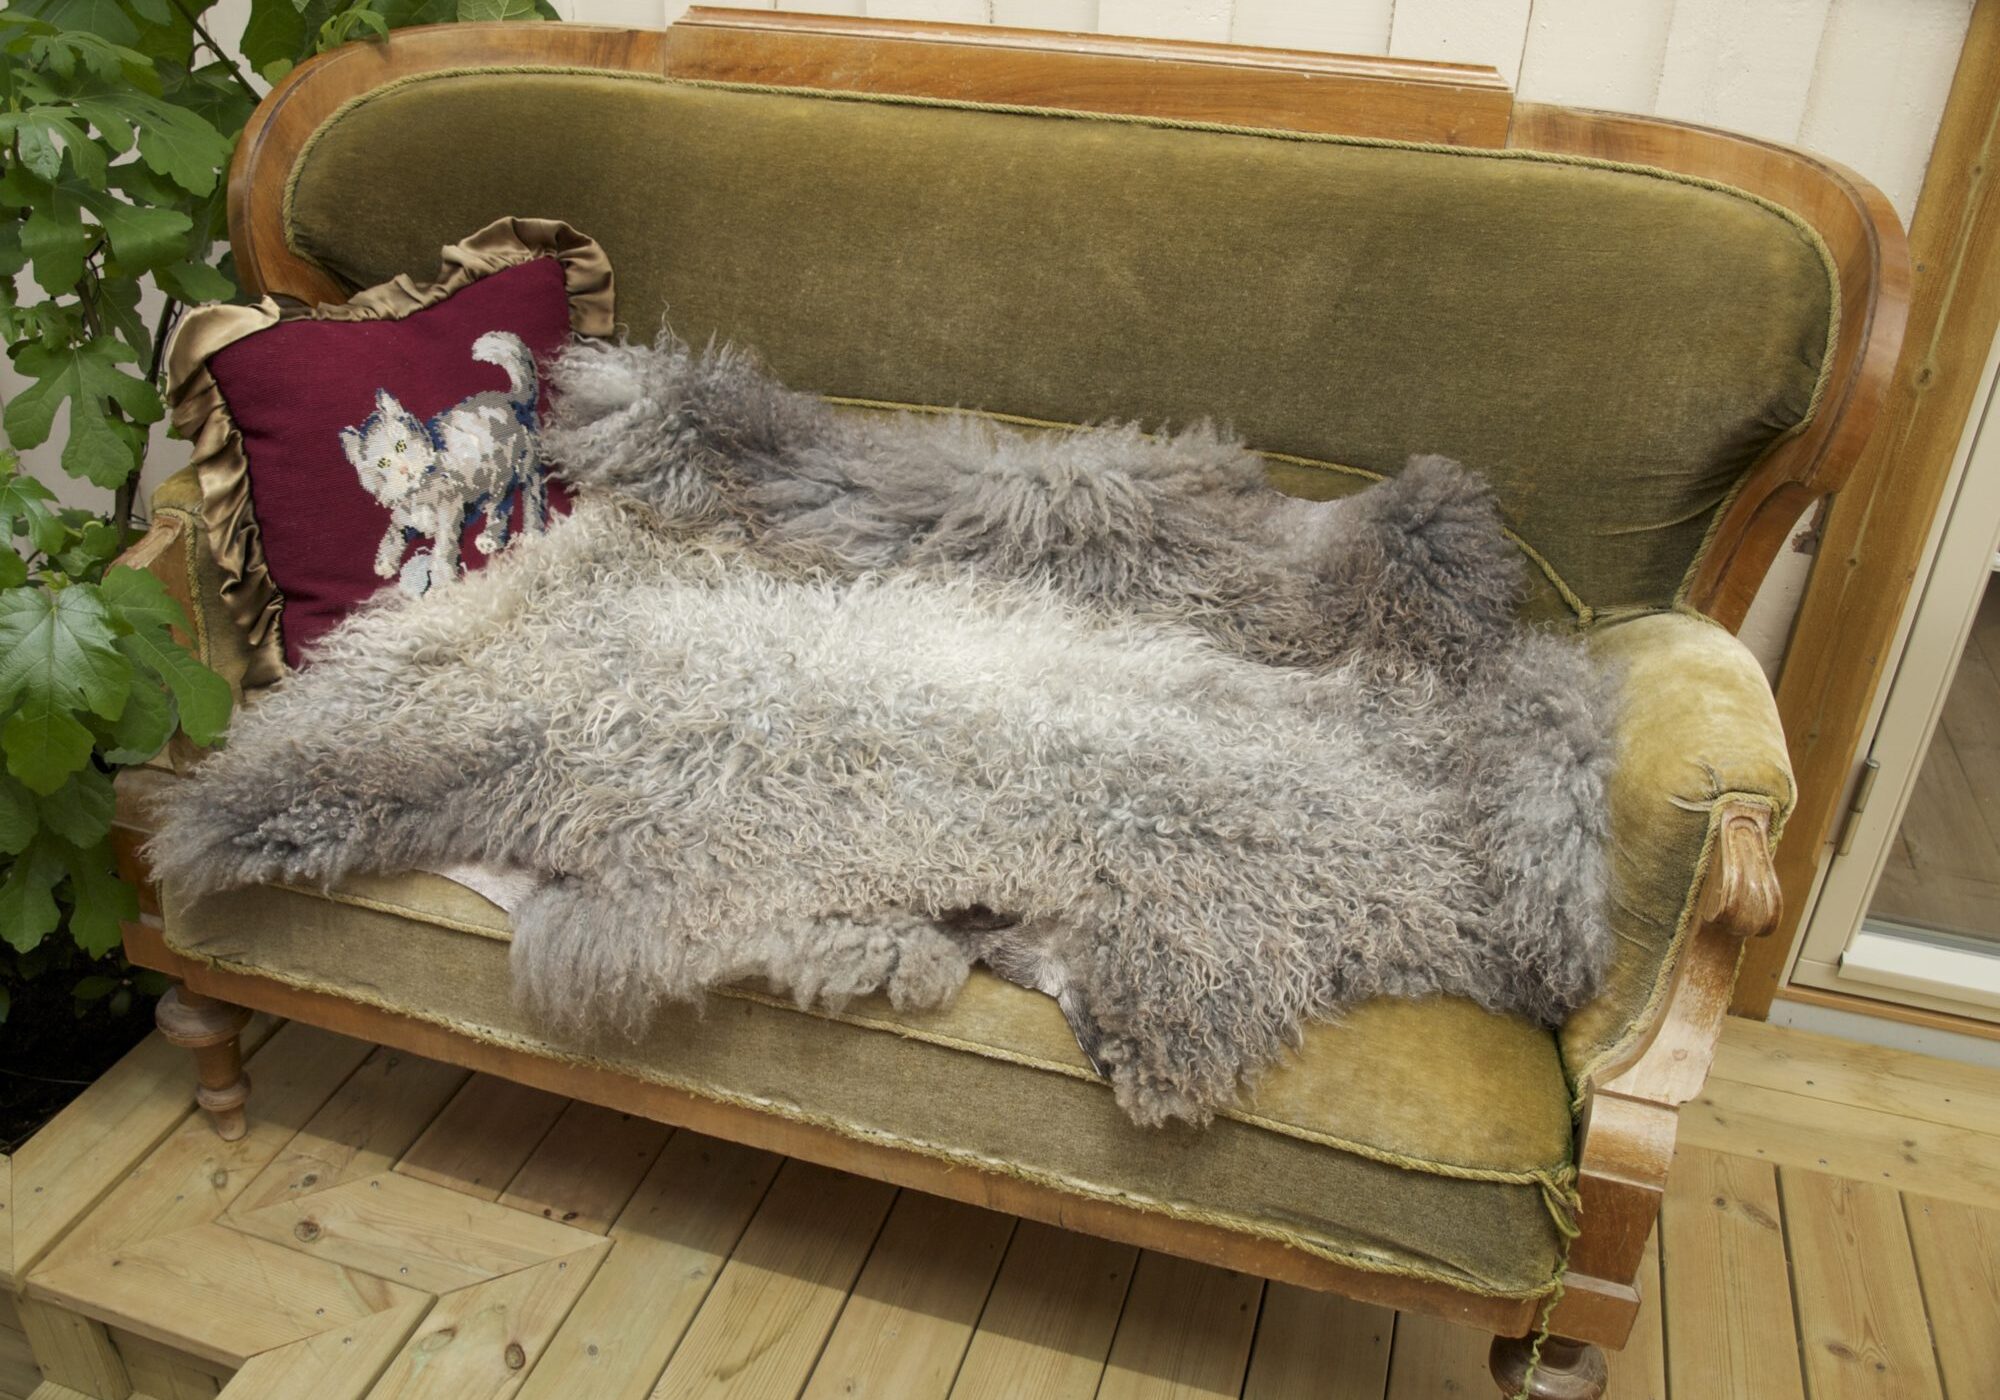 Norsk pelssau, austrått agroturisme, stort lammeskinn, uklippet, saueskinn i gammel og grønn sofa, rød pute på venstre side